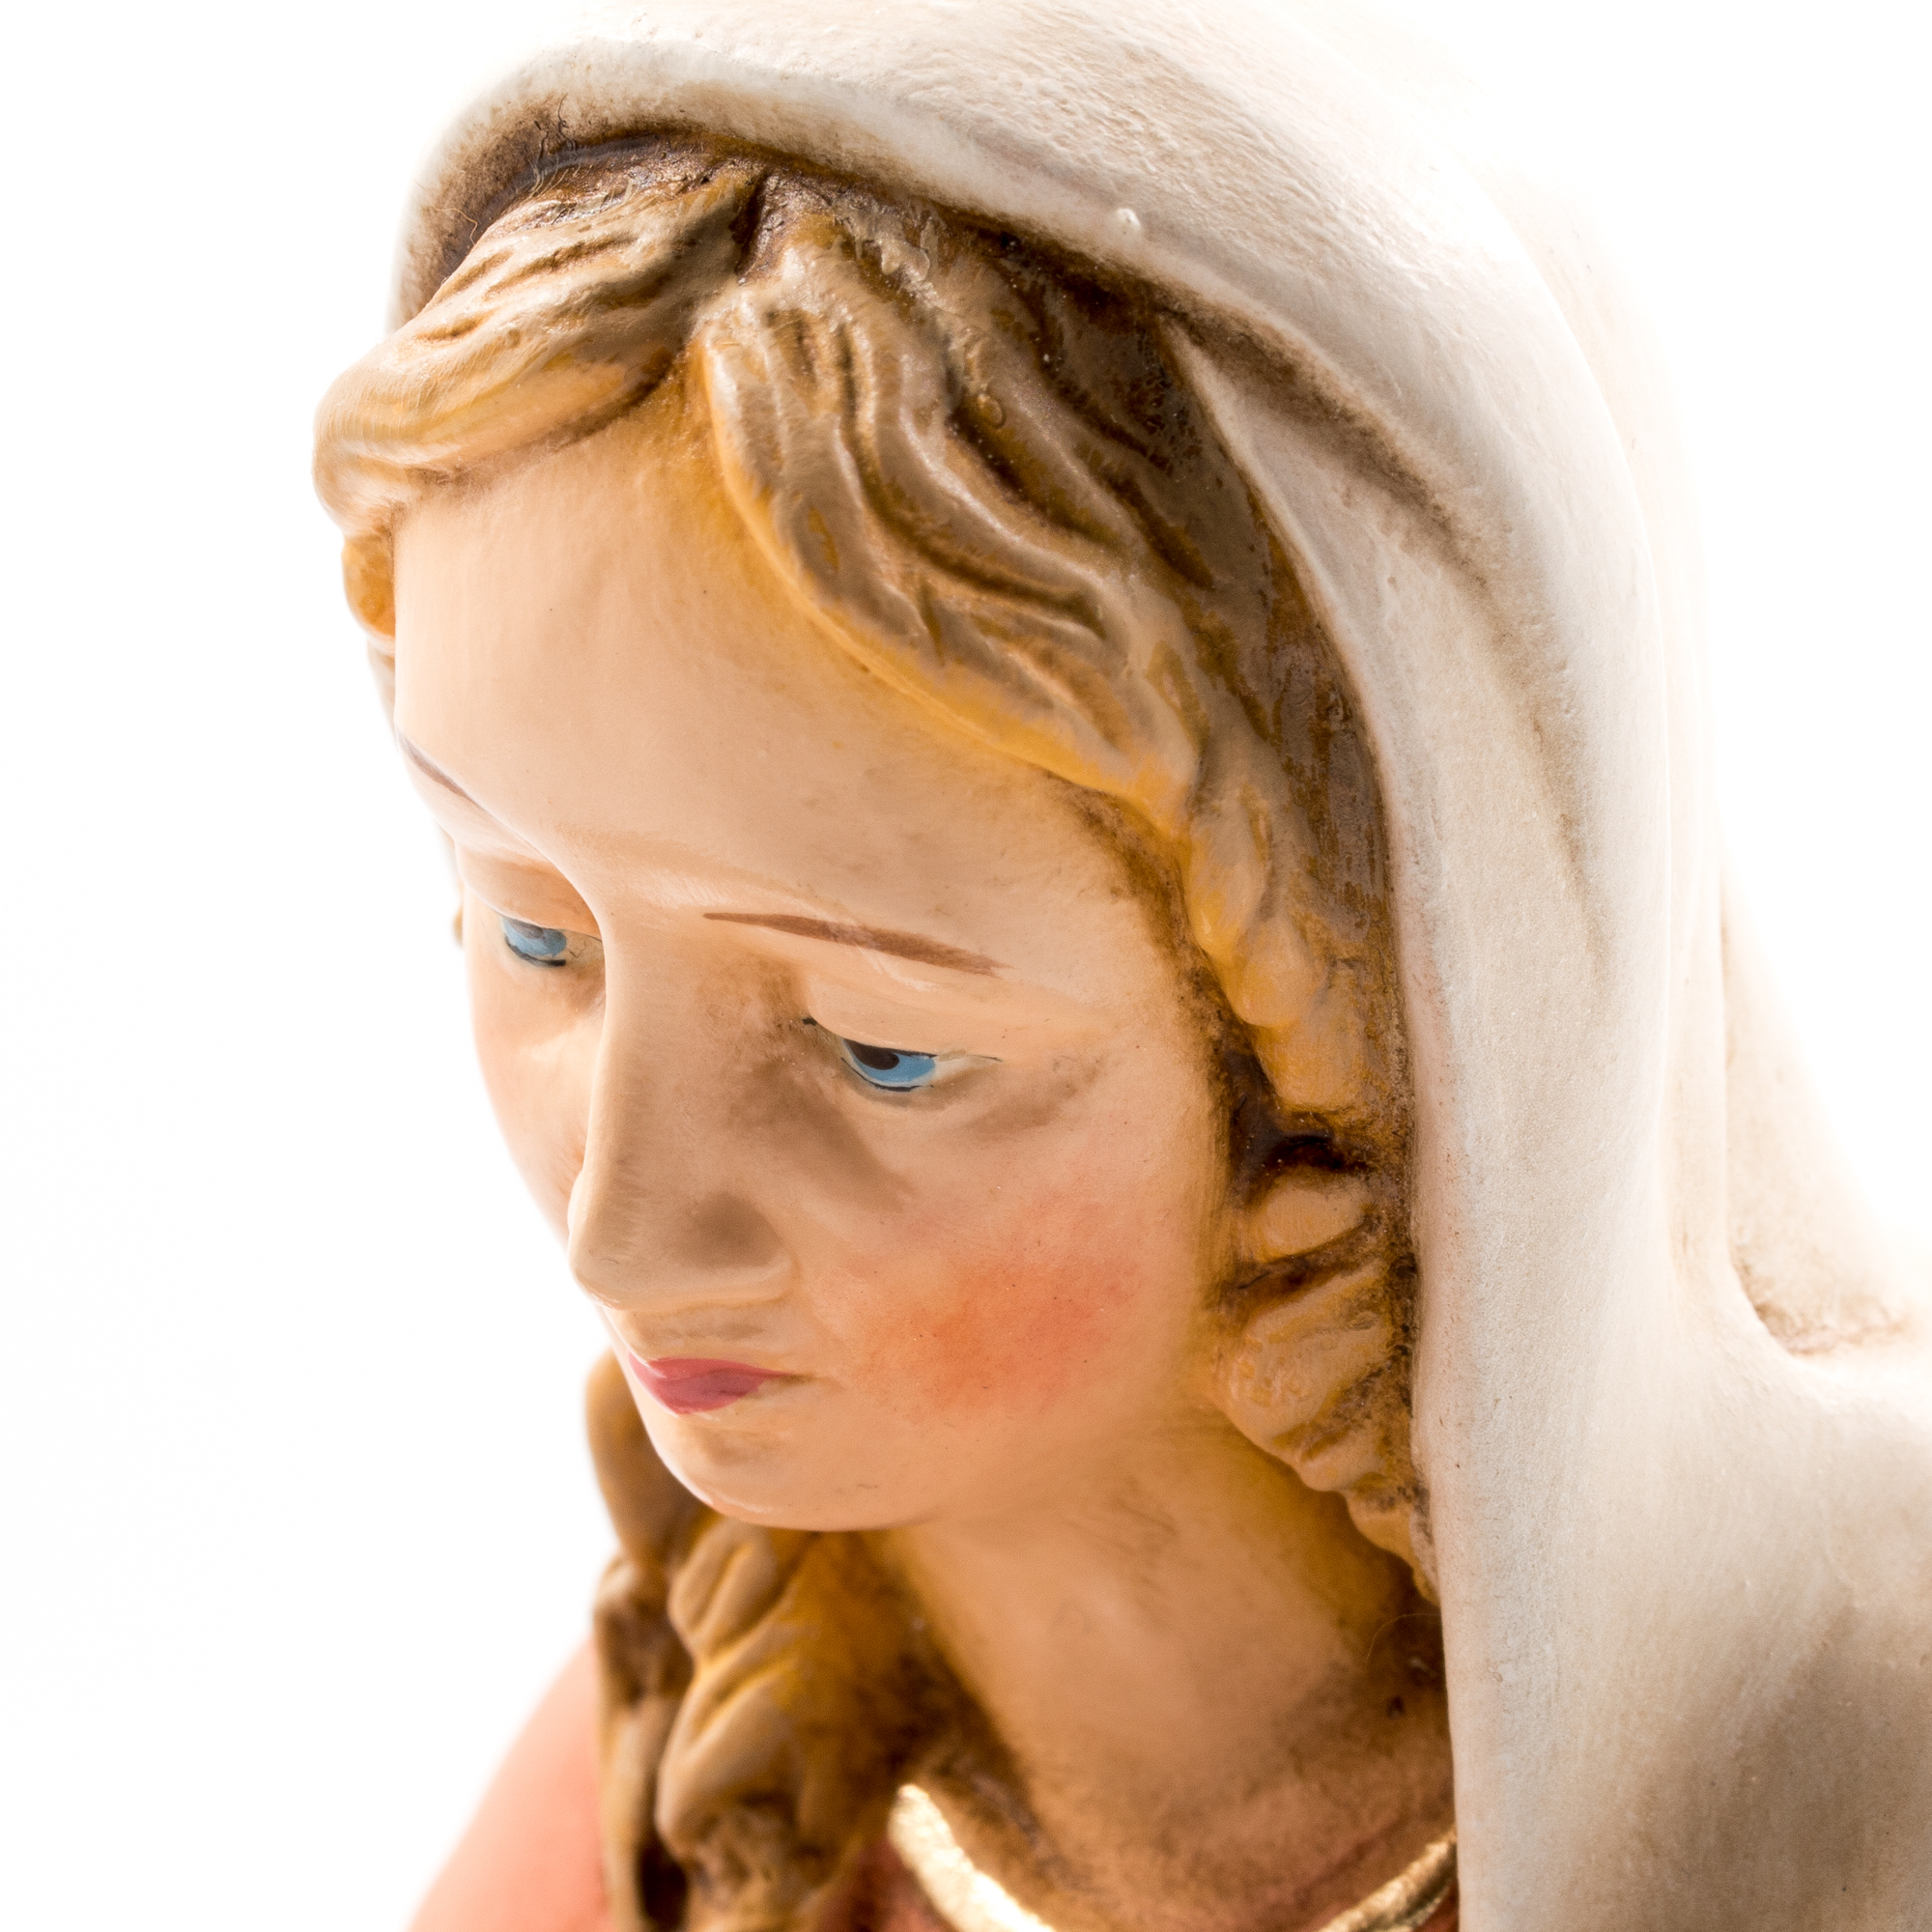 Maria mit Kind im Tuch, 2 Teile, zu 21 cm Figuren